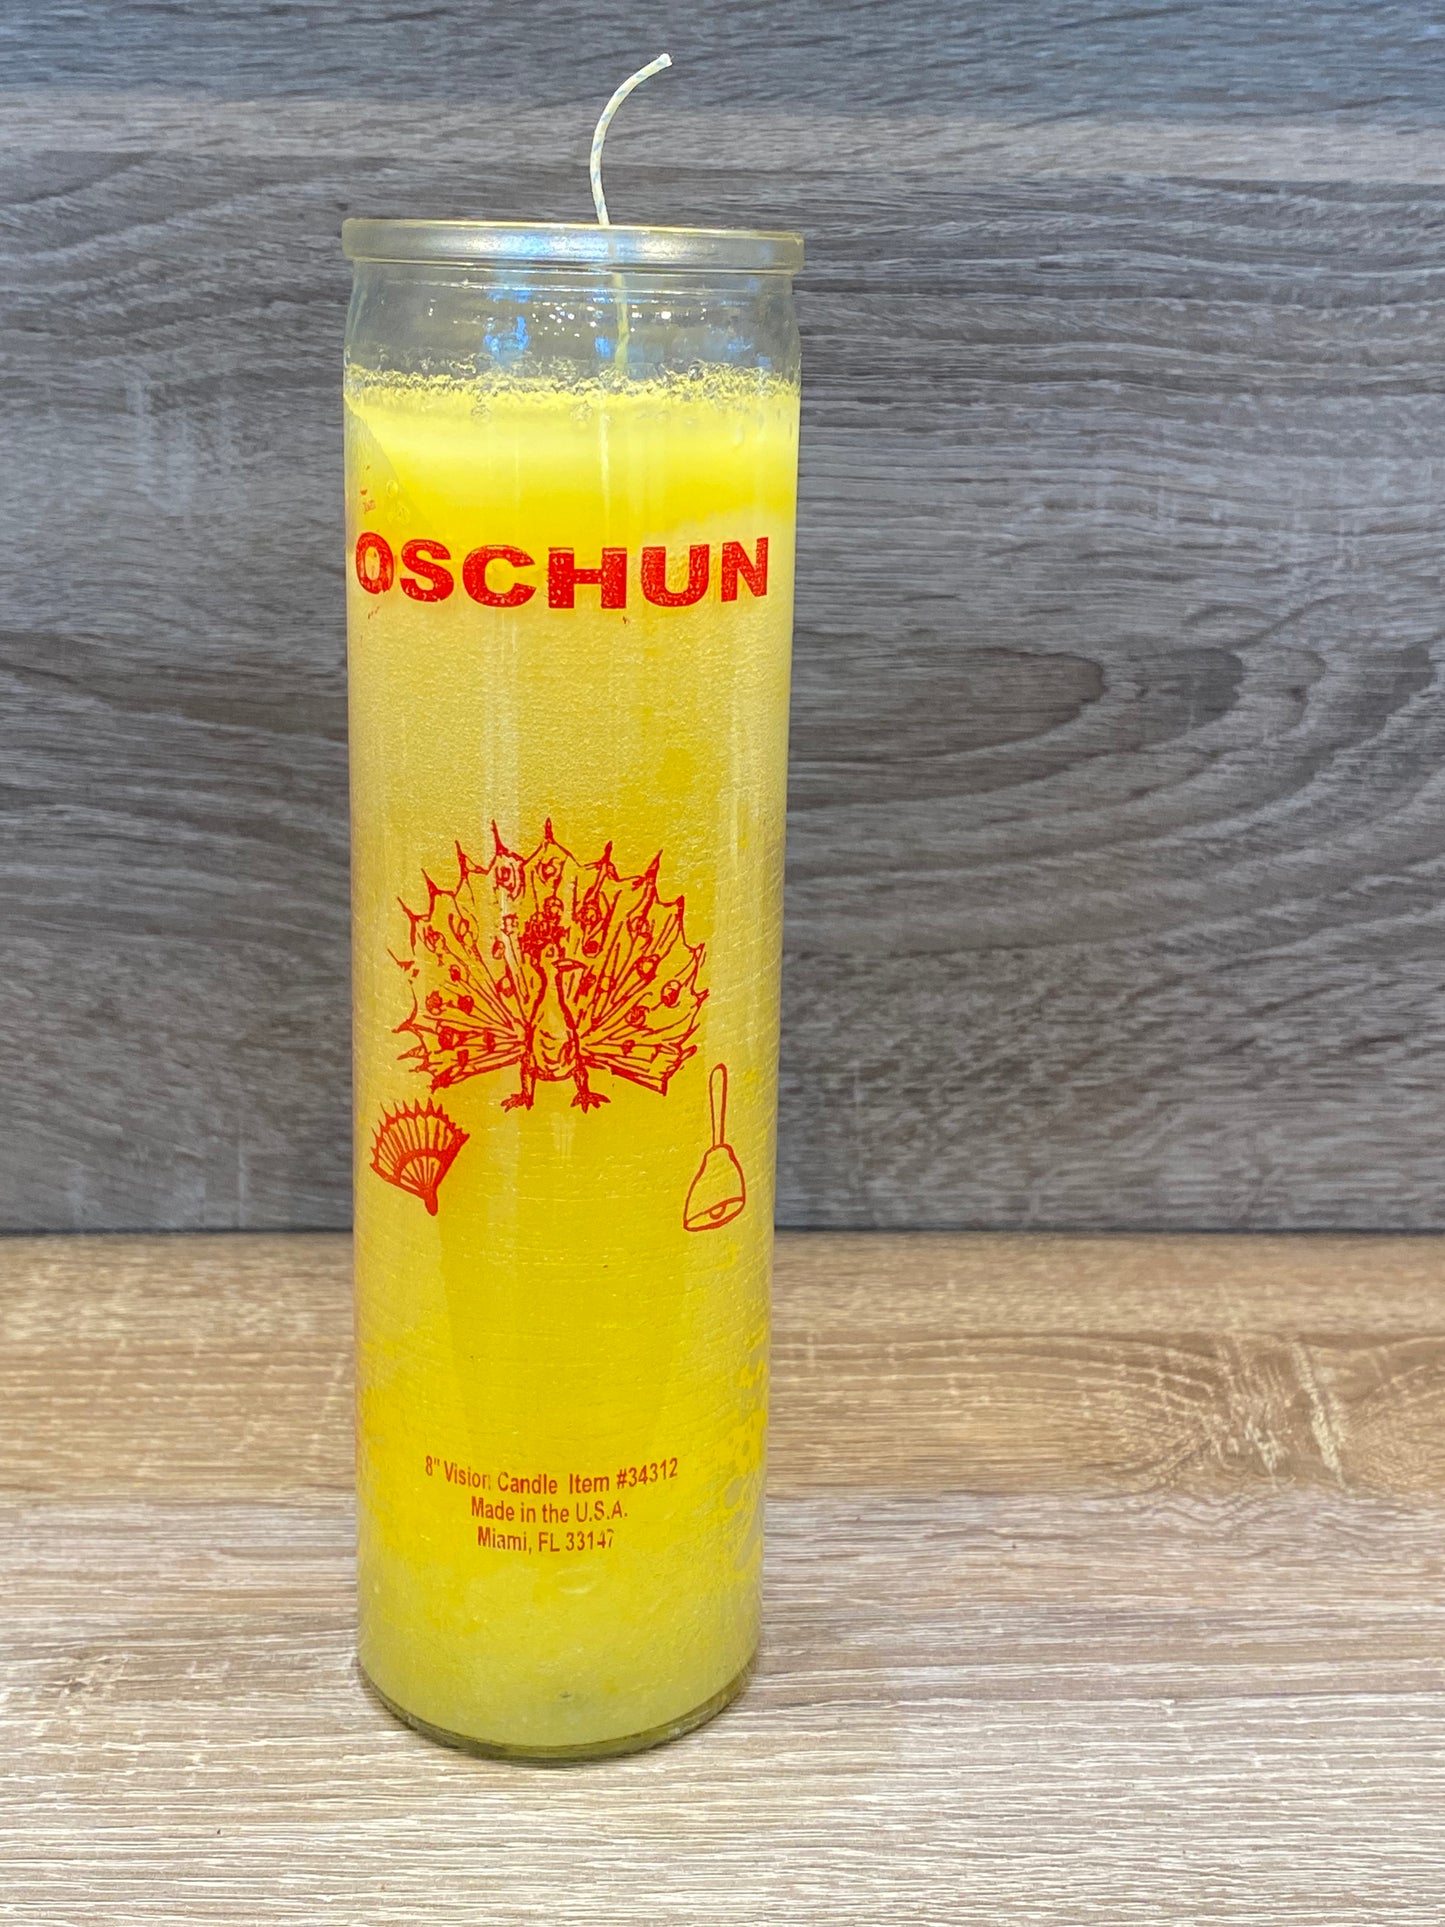 Orisha-Oschun 7 Day Candle, Yellow